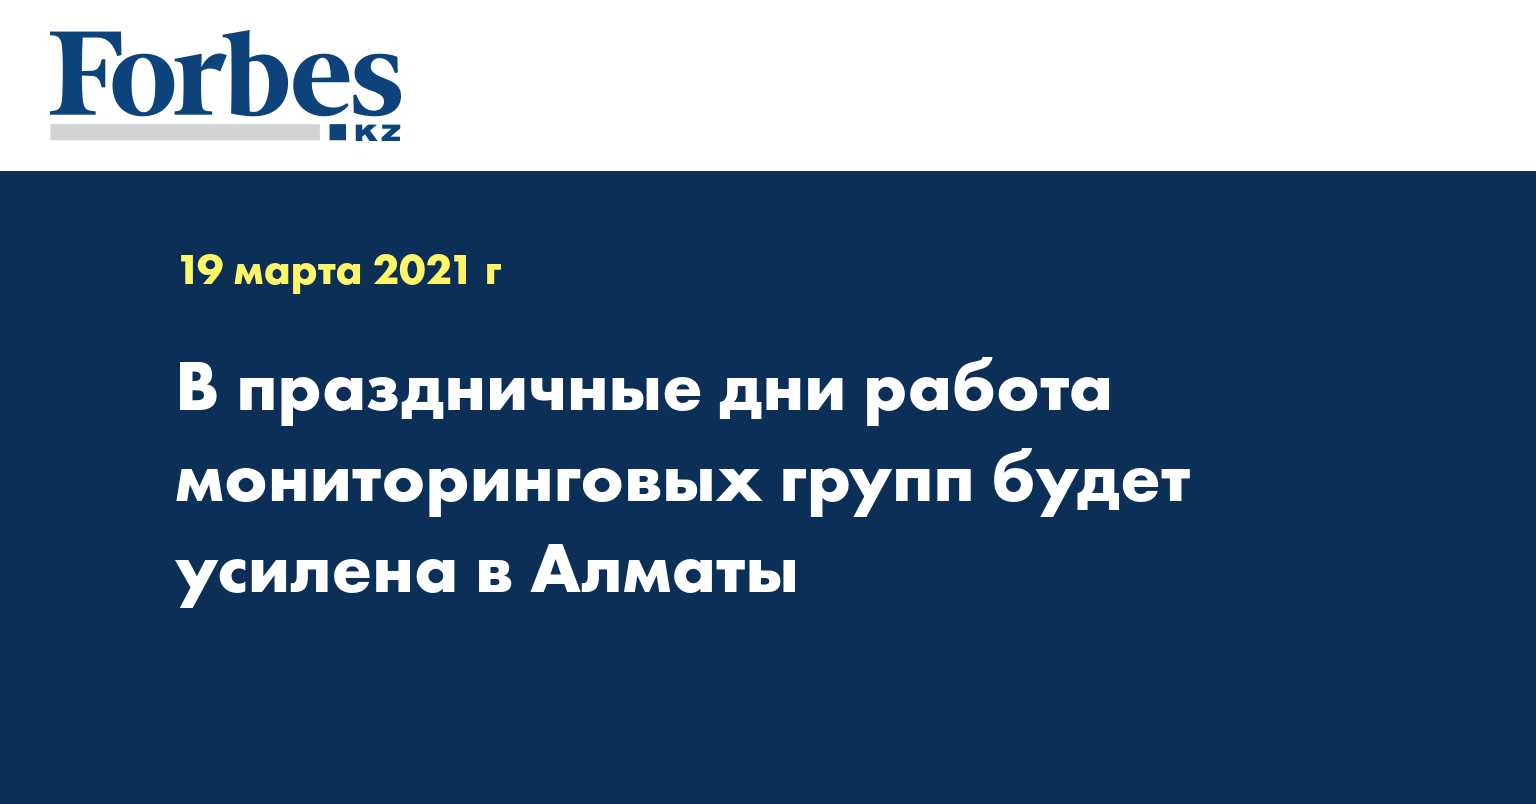 В праздничные дни работа мониторинговых групп будет усилена в Алматы